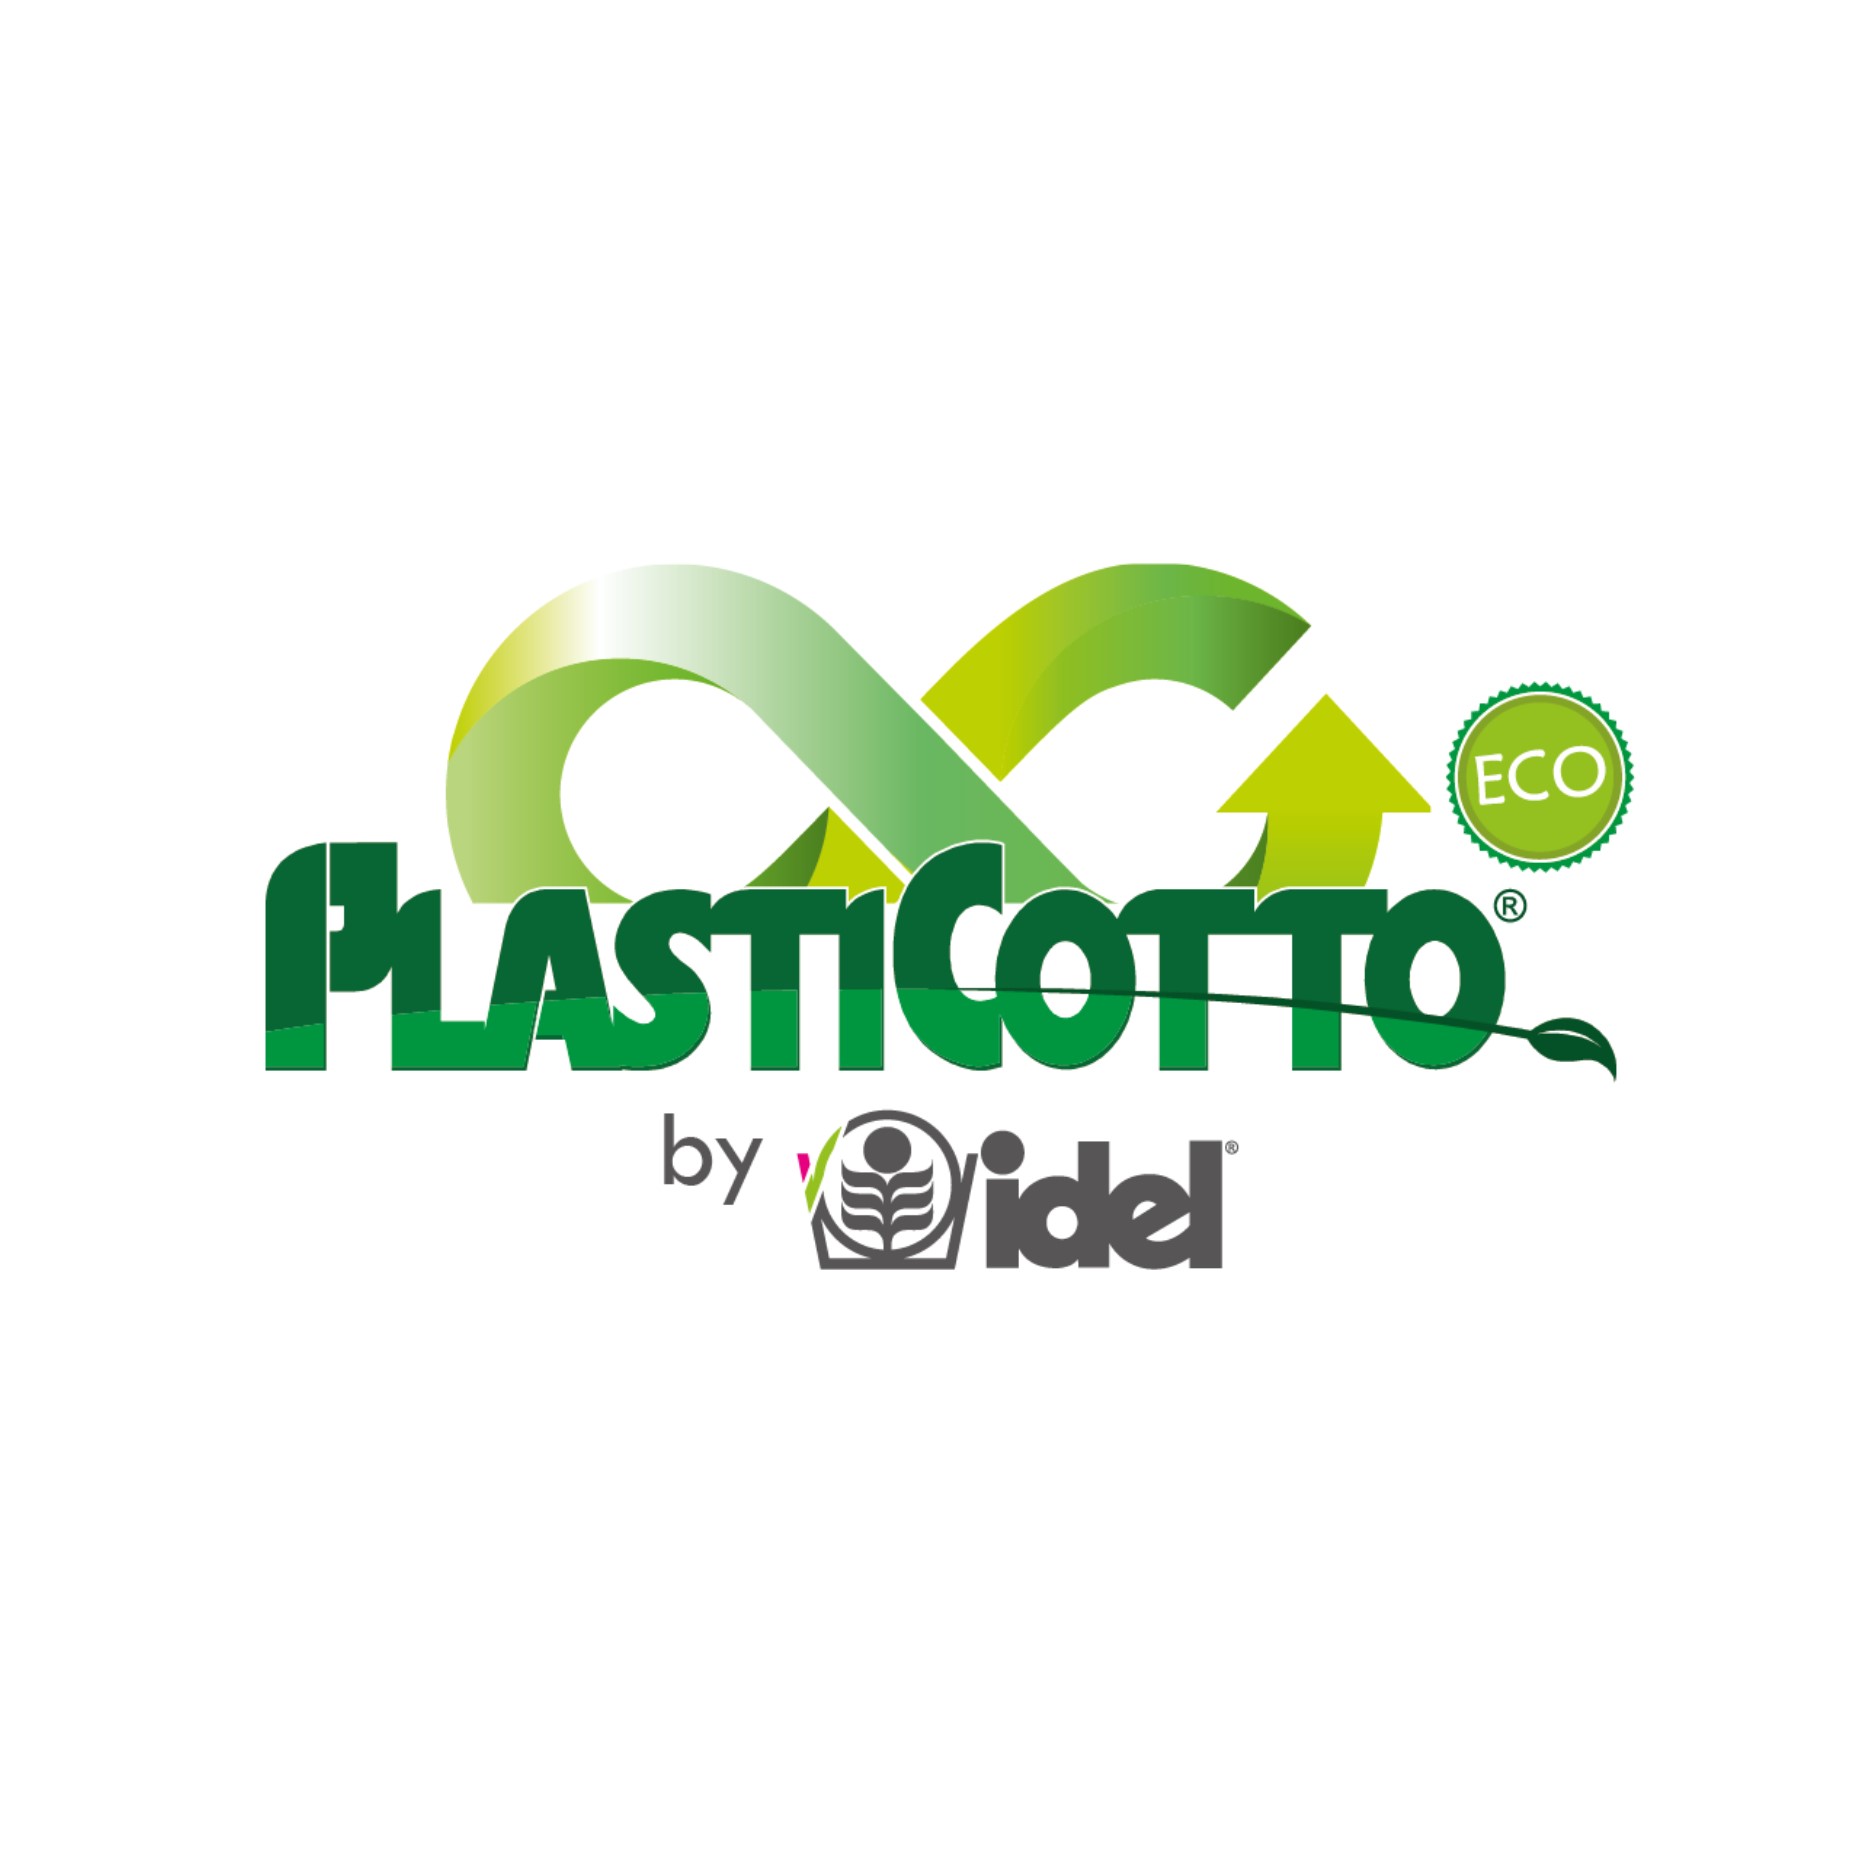 Plasticotto